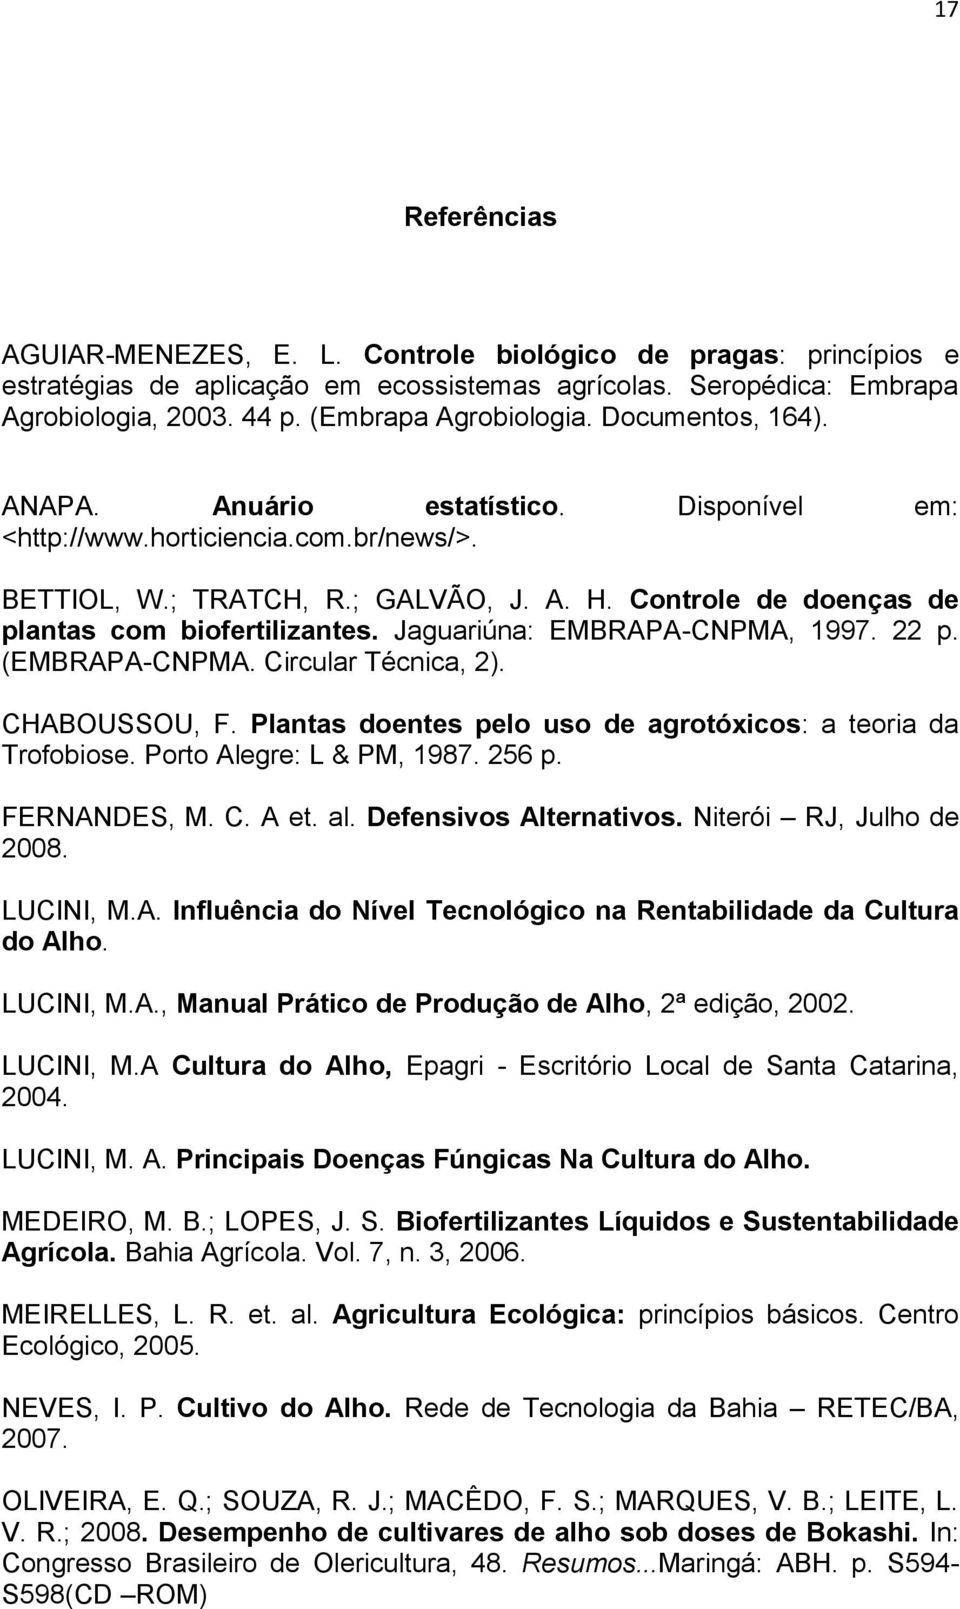 Jaguariúna: EMBRAPA-CNPMA, 1997. 22 p. (EMBRAPA-CNPMA. Circular Técnica, 2). CHABOUSSOU, F. Plantas doentes pelo uso de agrotóxicos: a teoria da Trofobiose. Porto Alegre: L & PM, 1987. 256 p.